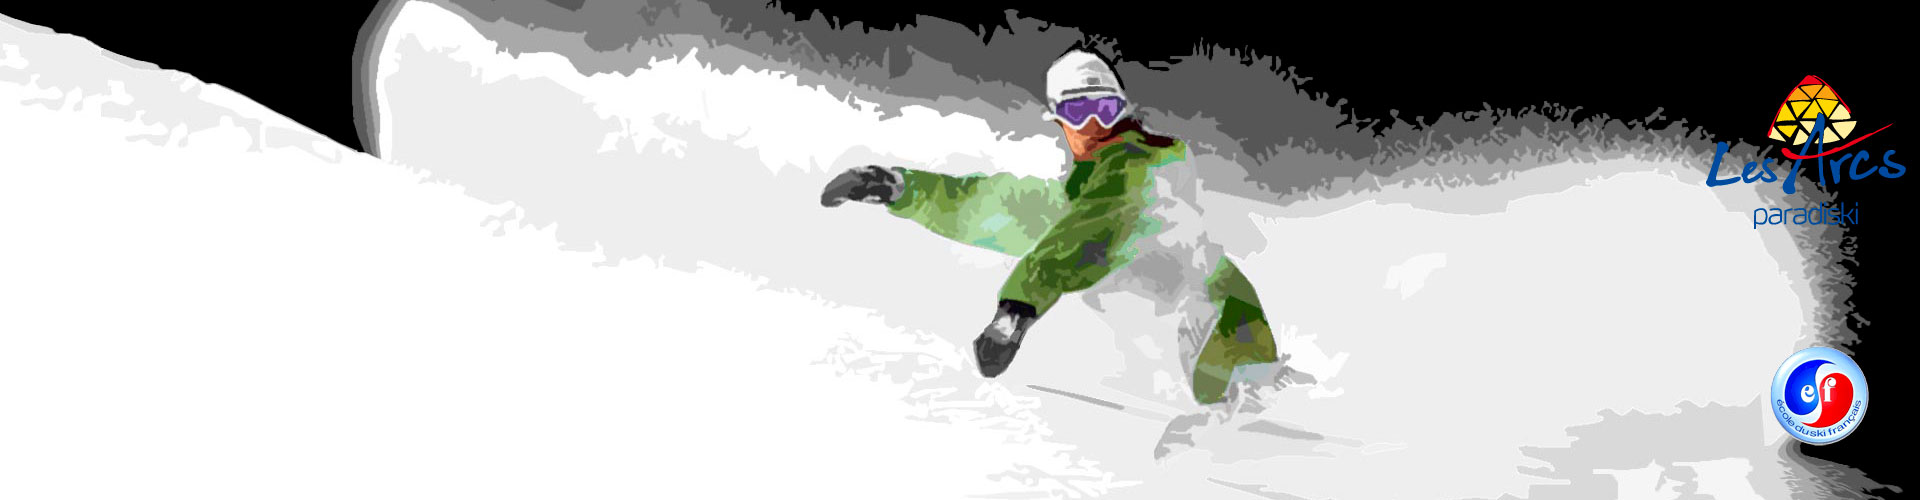 Cours snowboard Les Arcs 2000, 1950, 1800 et 1600